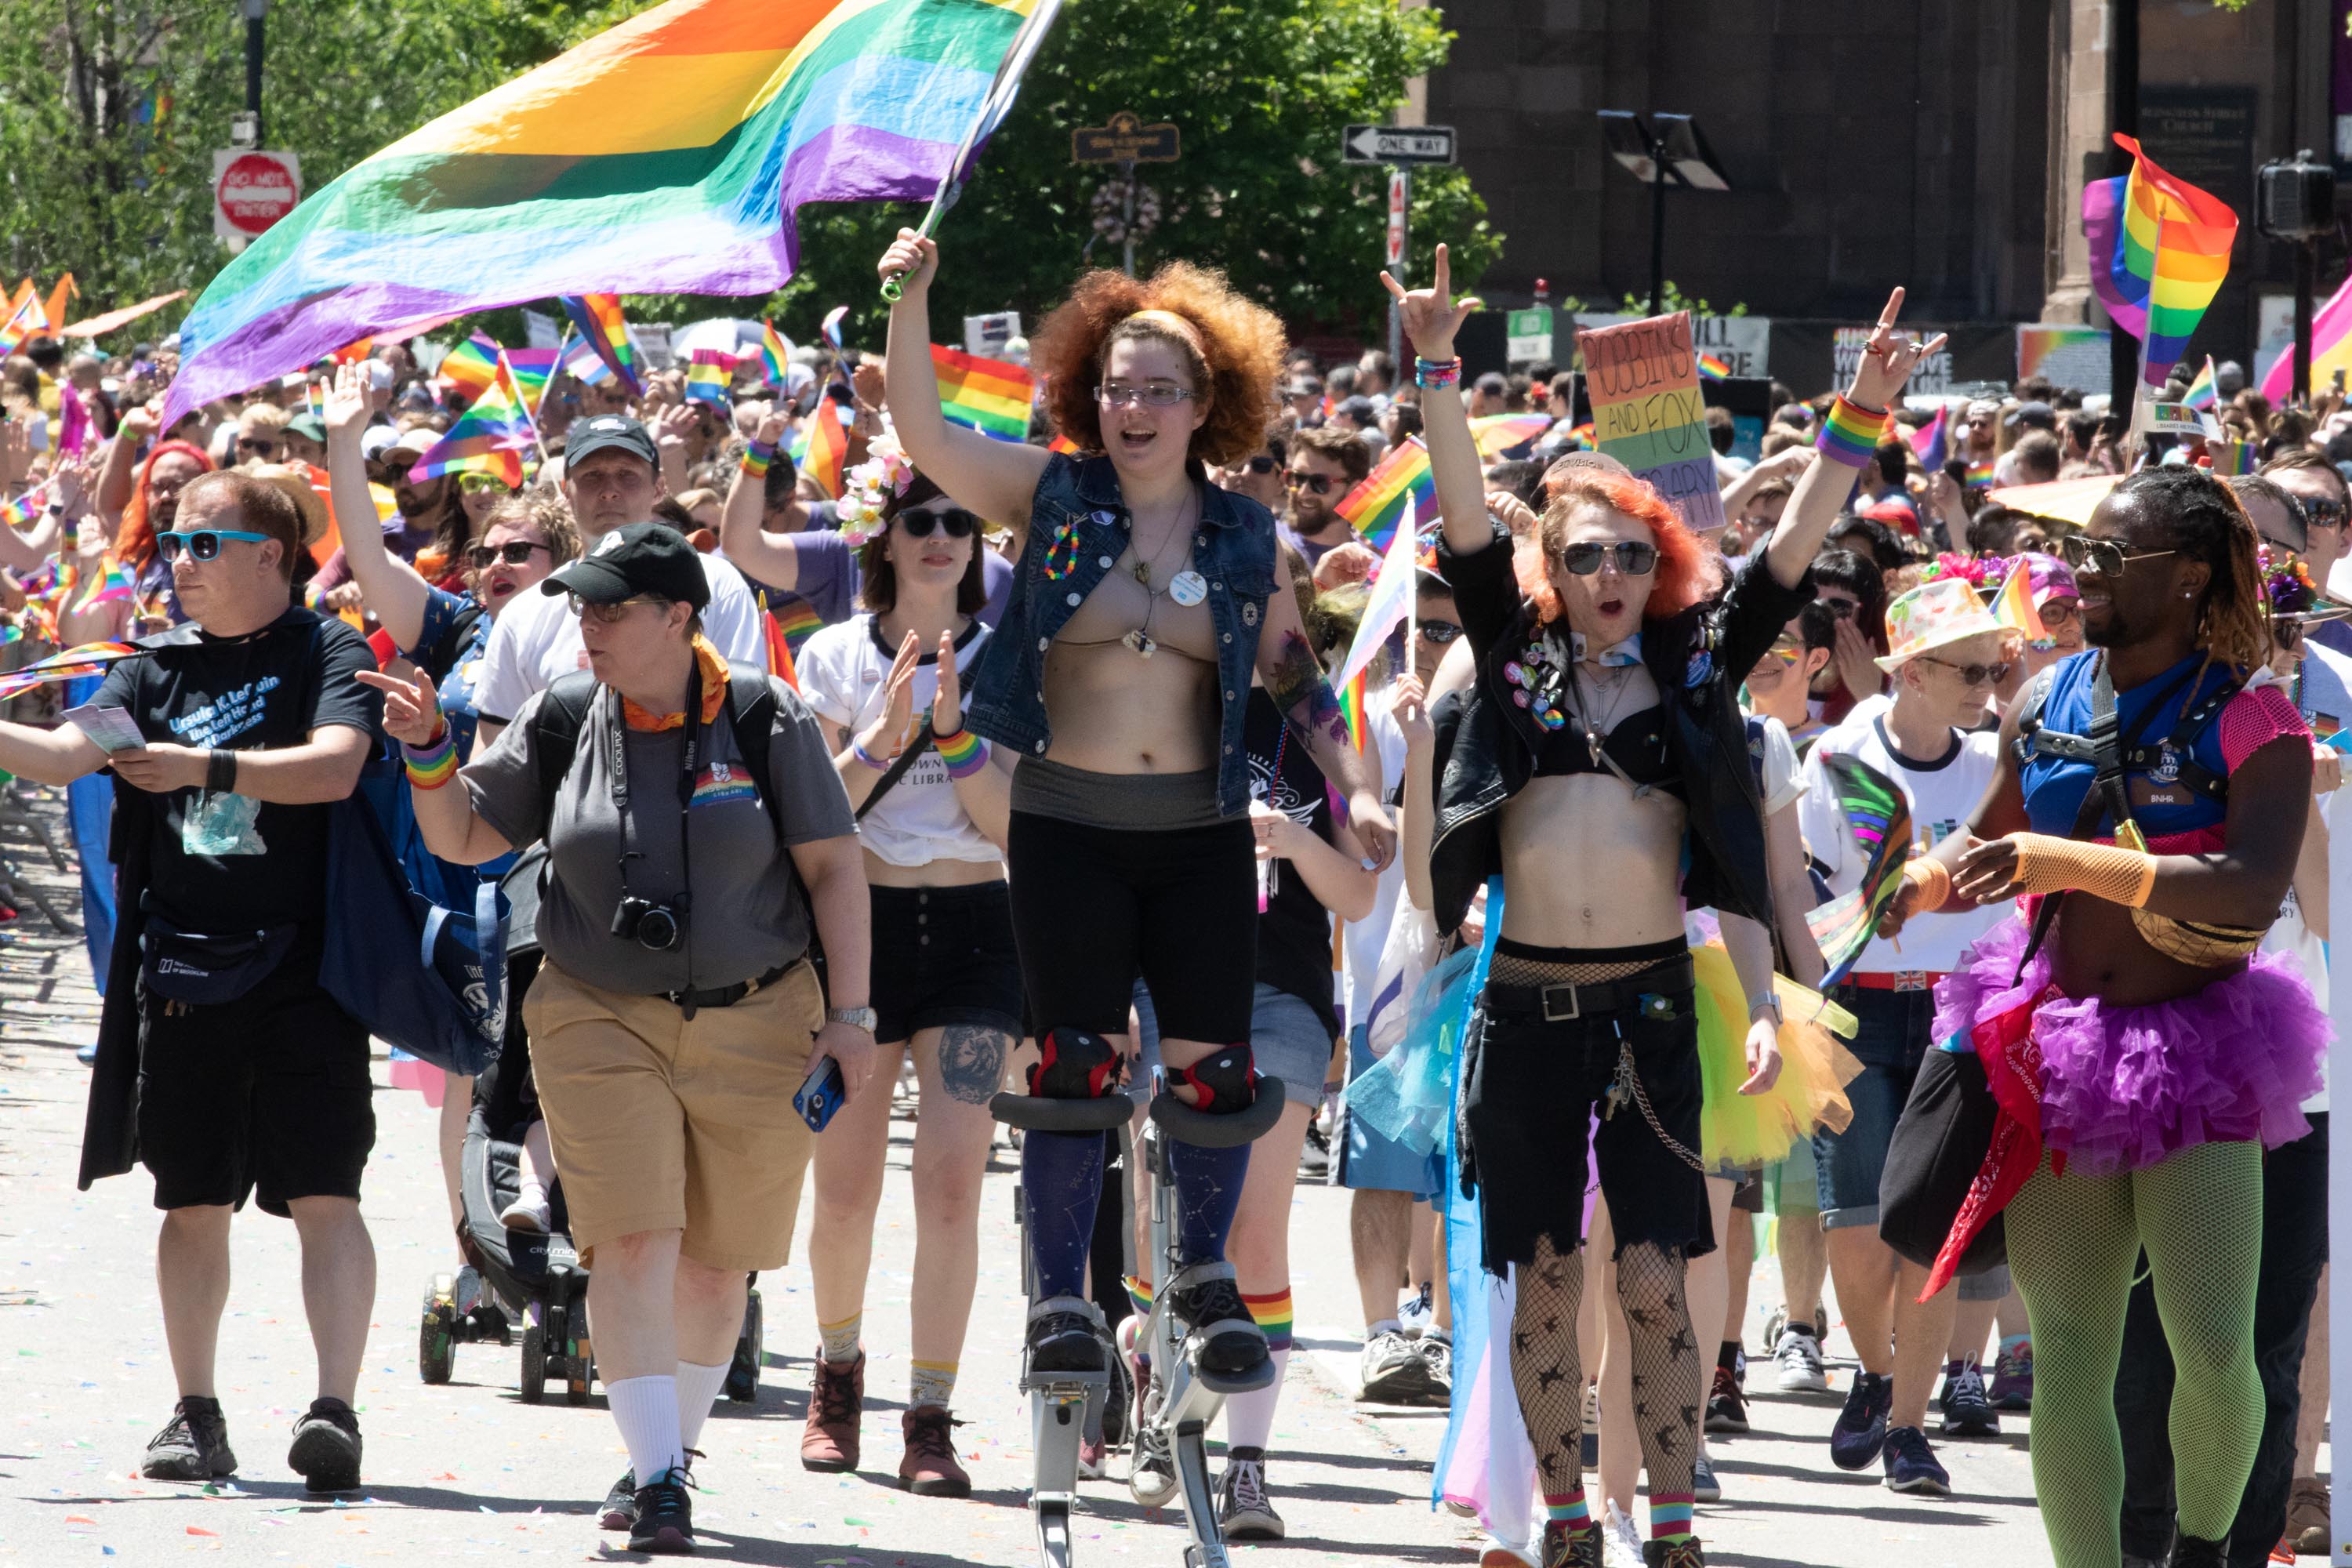 parade route gay pride Boston